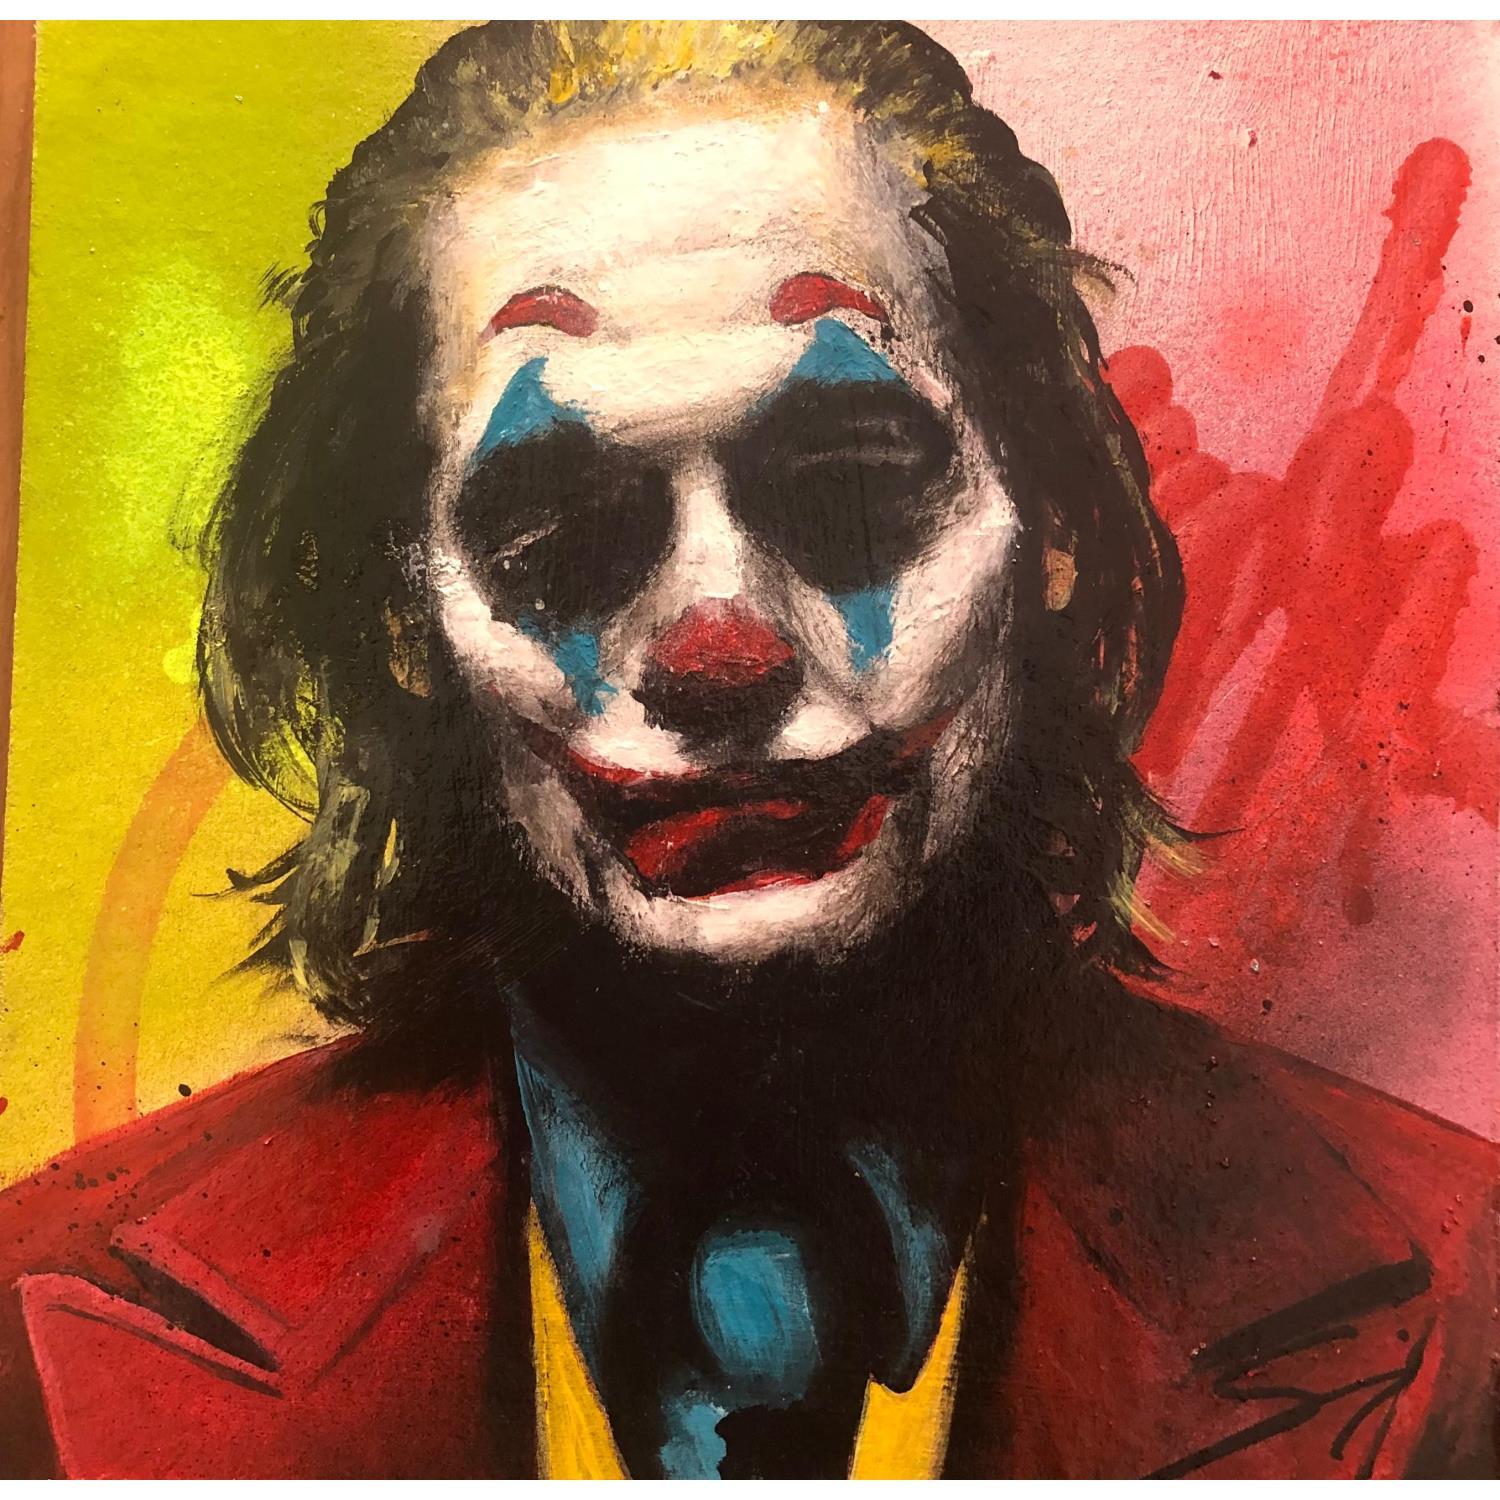 Tableau Pop Art Joker